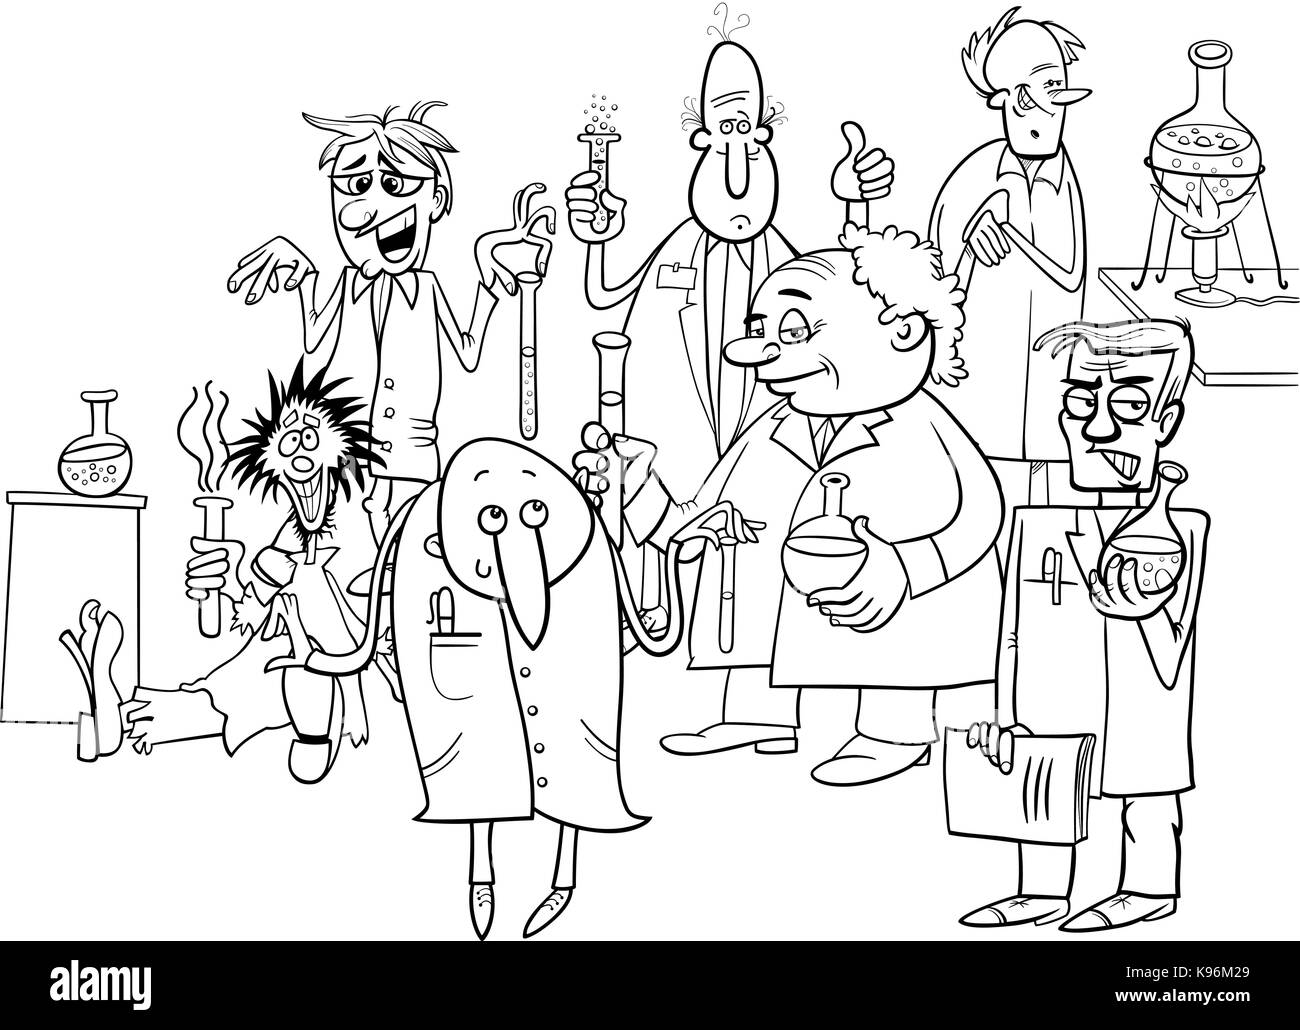 Schwarze und Weiße Cartoon Illustration von lustigen oder verrückte Wissenschaftler Zeichen Gruppe Experimente Malbuch Stock Vektor